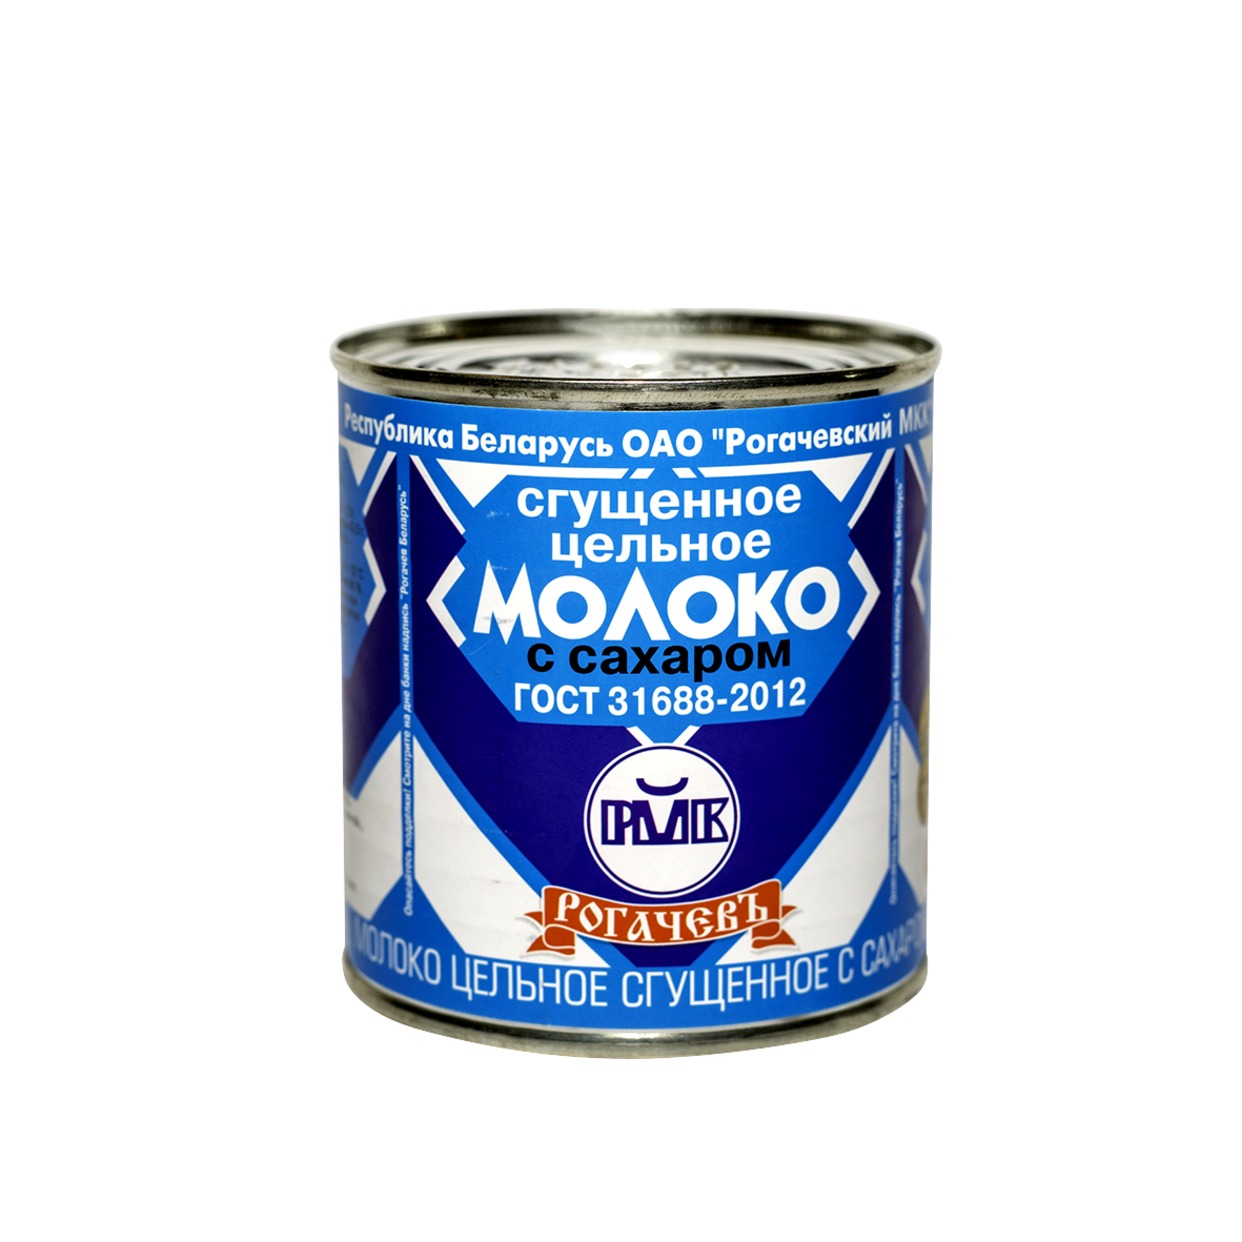 Молоко сгущеное "Рогачев" с сахаром 8,5% 380г по акции в Пятерочке